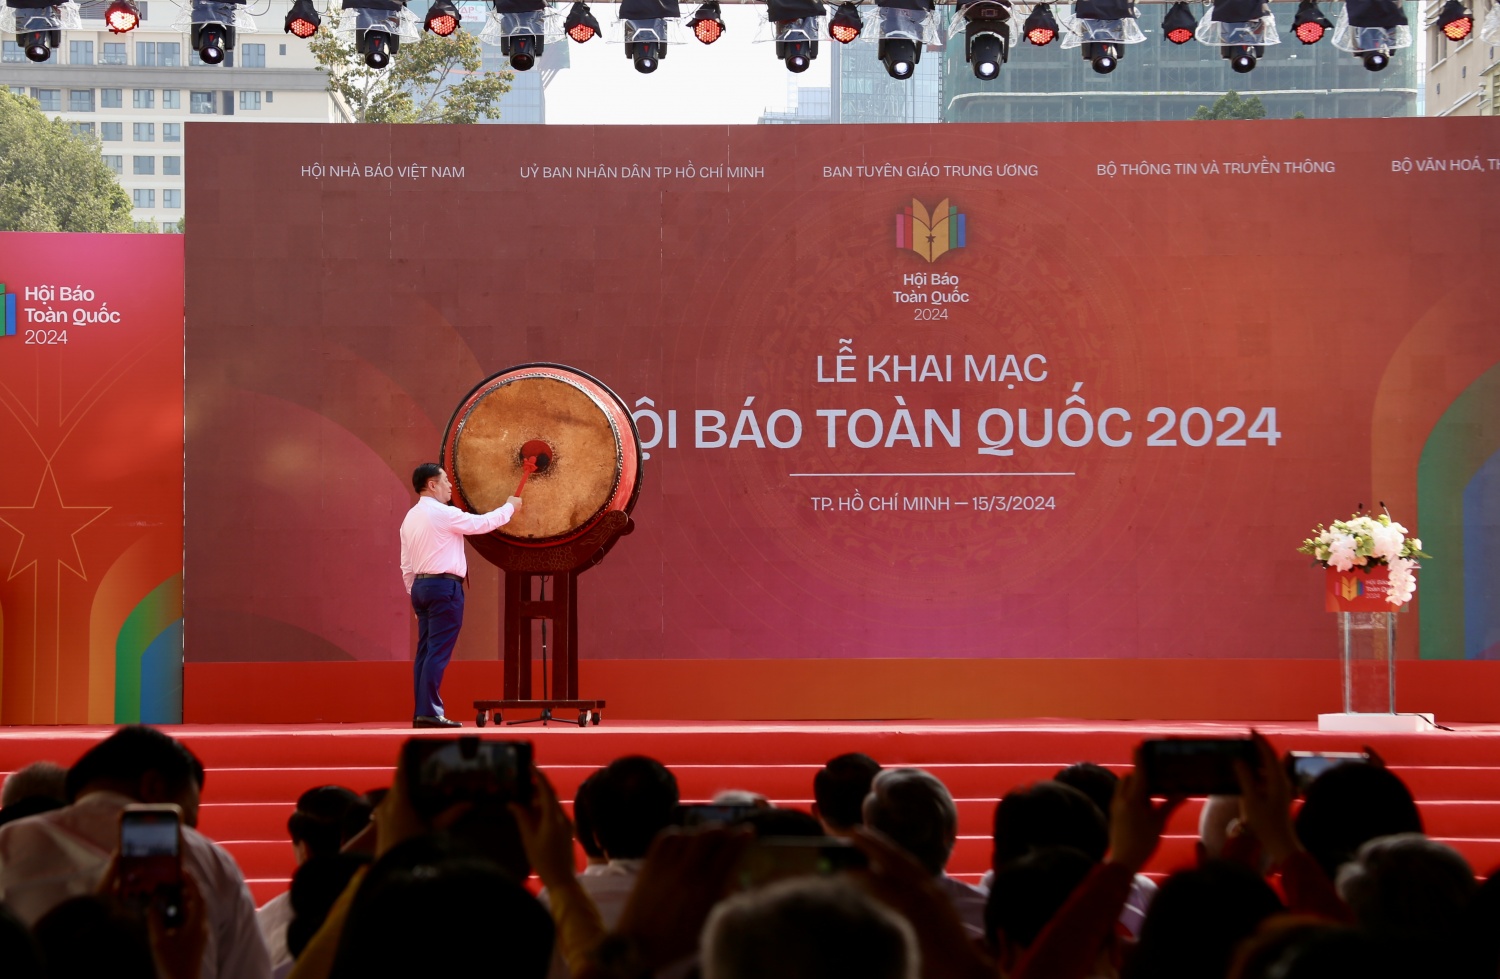 [Ảnh] Sôi nổi Hội Báo toàn quốc 2024 lần đầu tổ chức ở TP Hồ Chí Minh